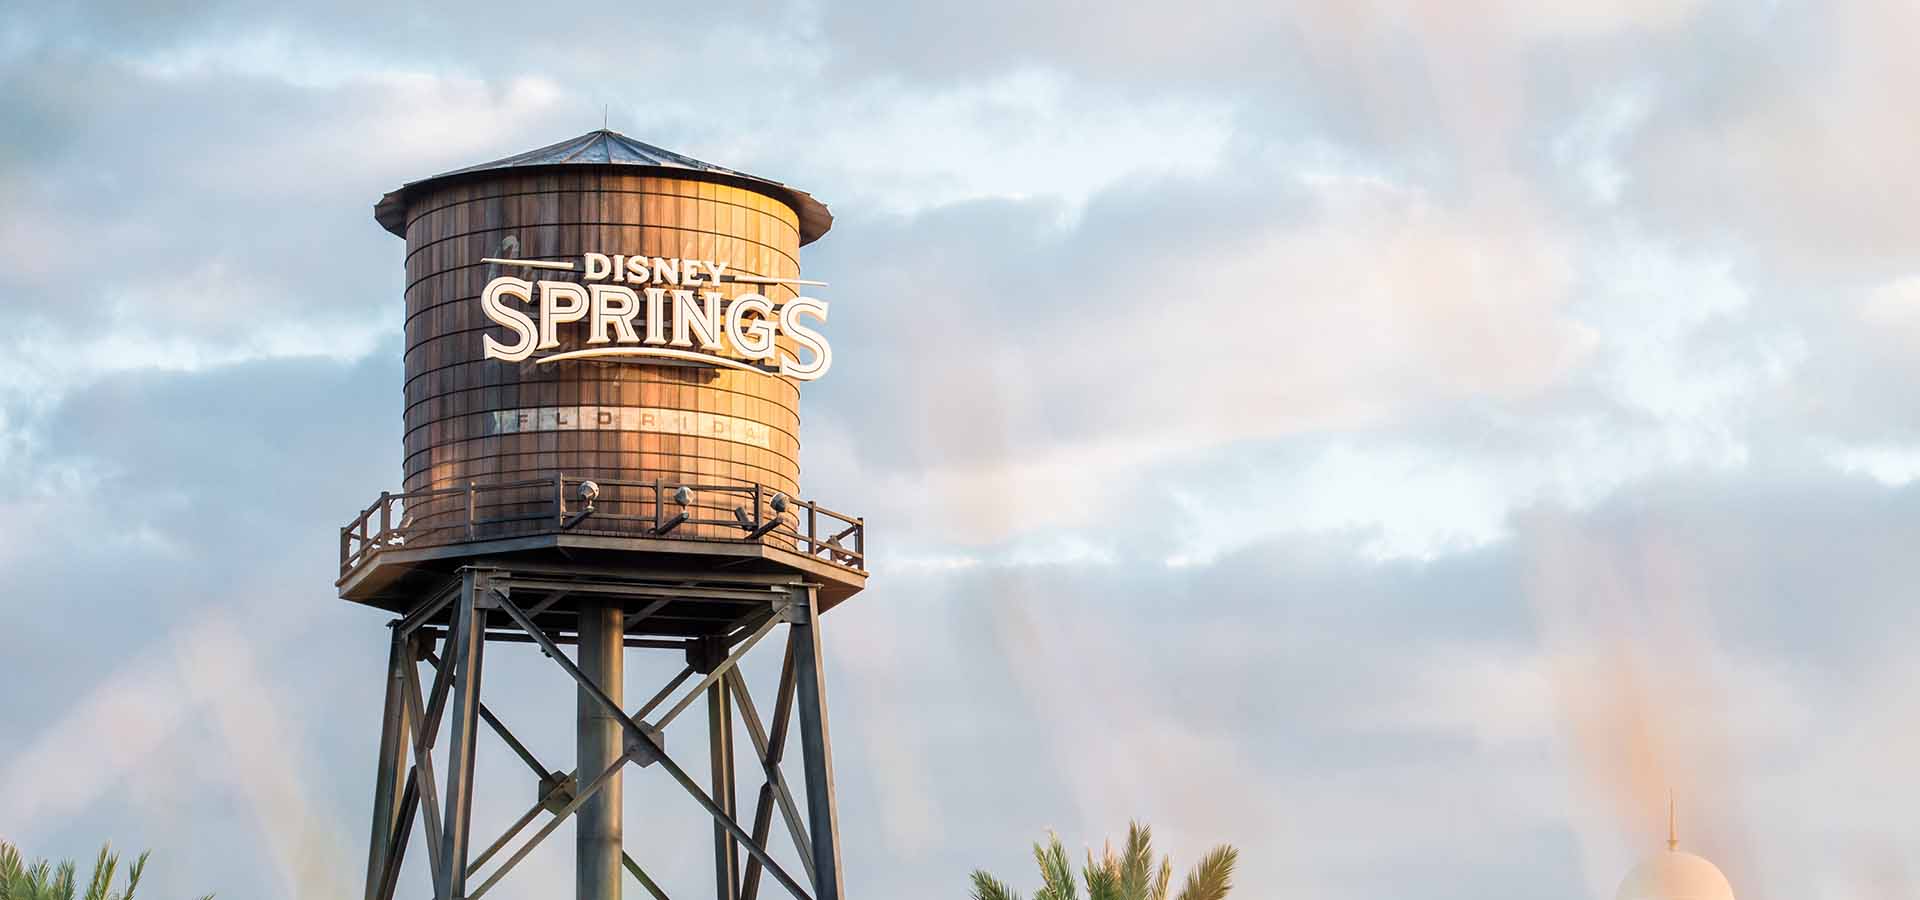 Vista de la torre de agua de Disney Springs